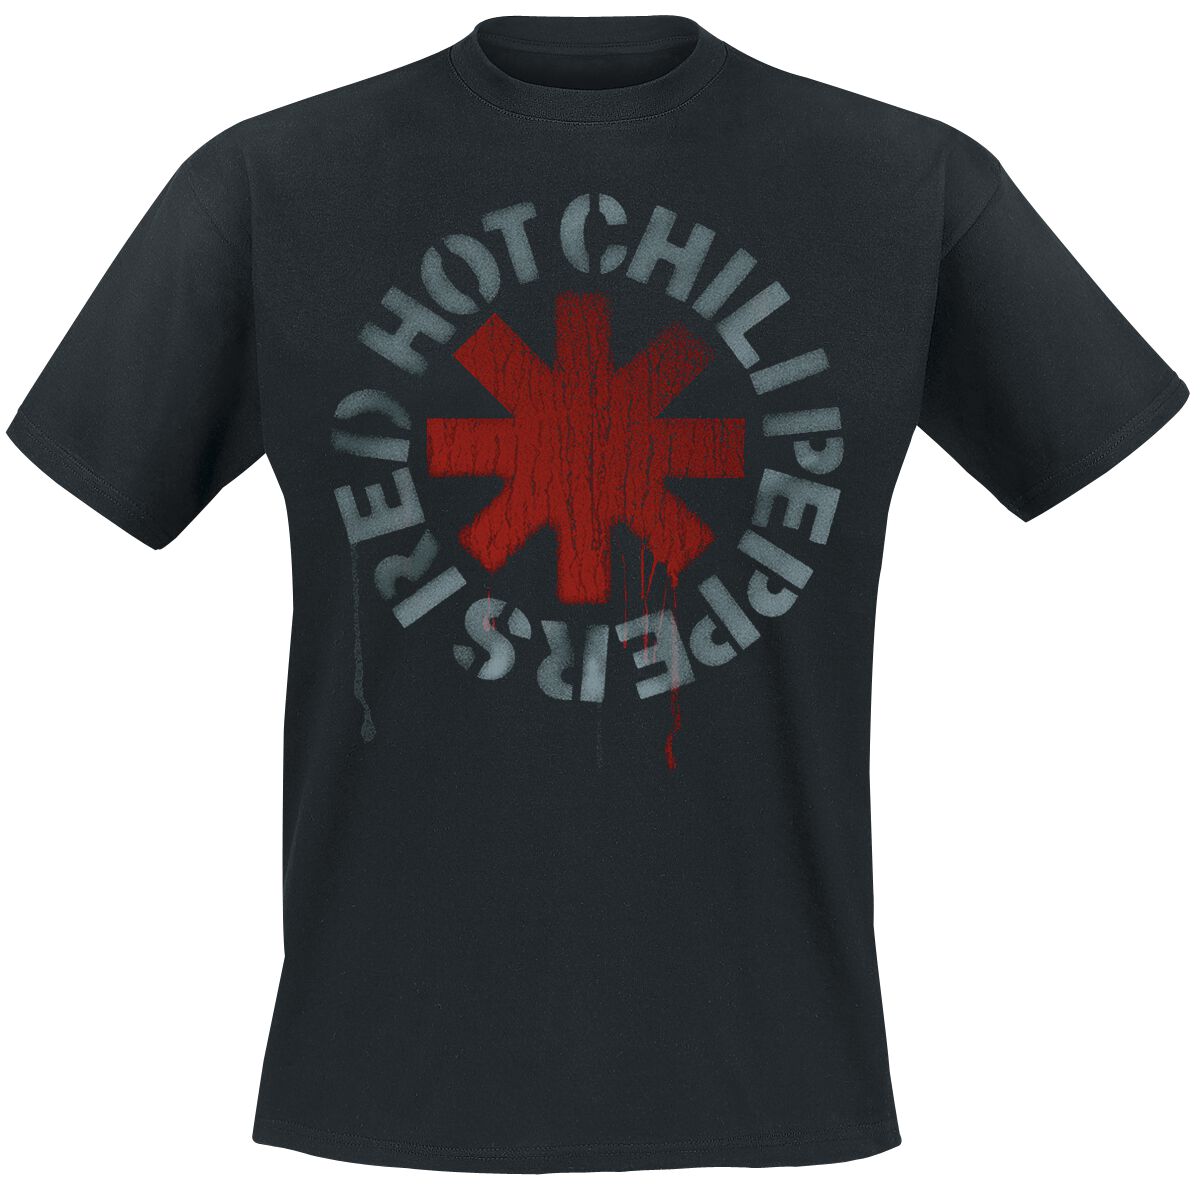 Red Hot Chili Peppers T-Shirt - Stencil Black - S bis 5XL - für Männer - Größe S - schwarz  - Lizenziertes Merchandise! von Red Hot Chili Peppers